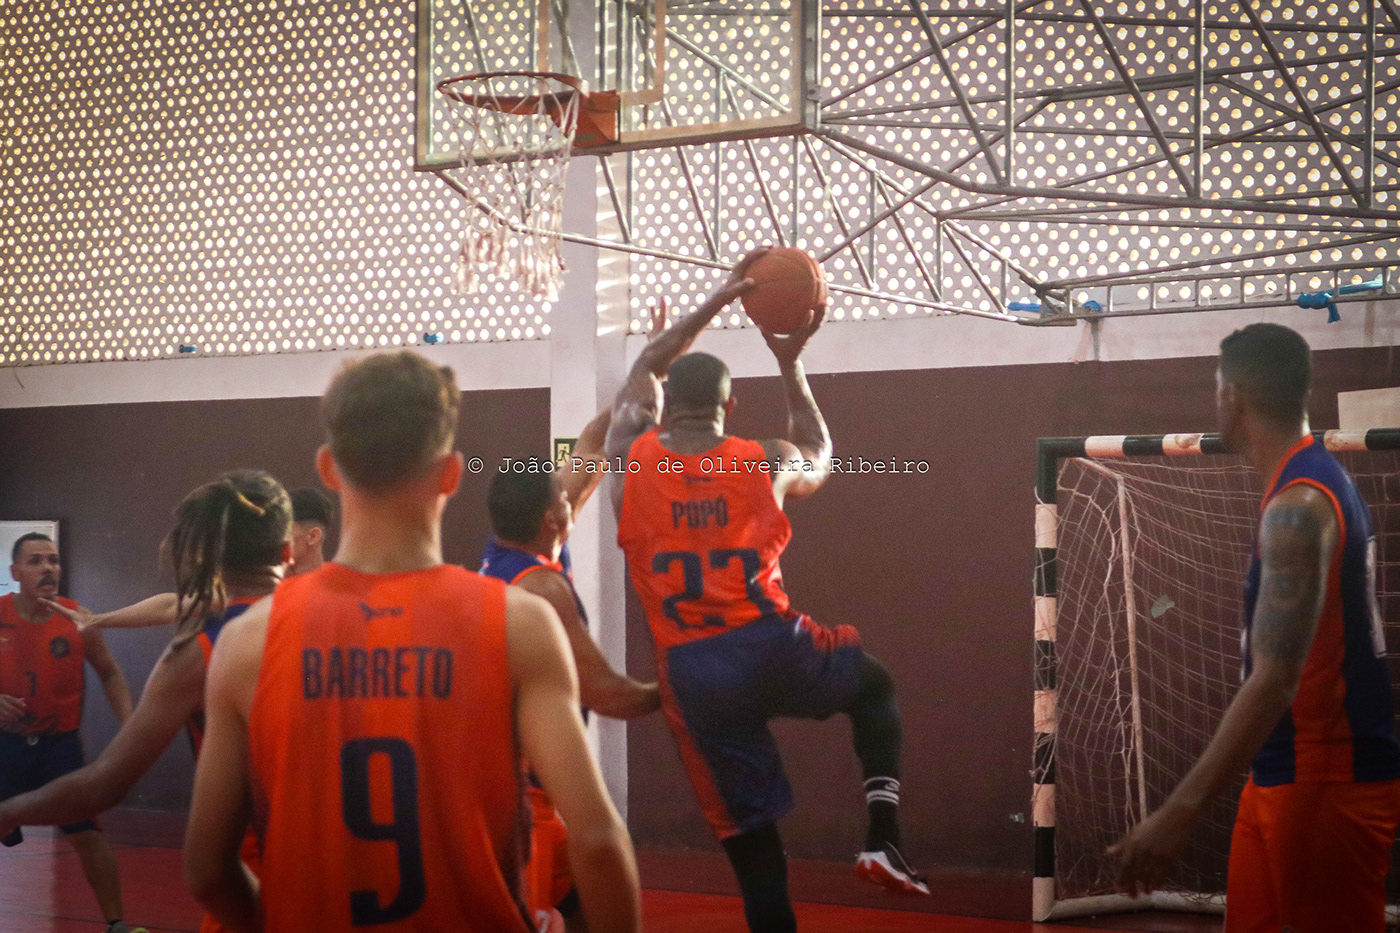 basquete basketball sports Photography  Fotografia cobertura fotográfica